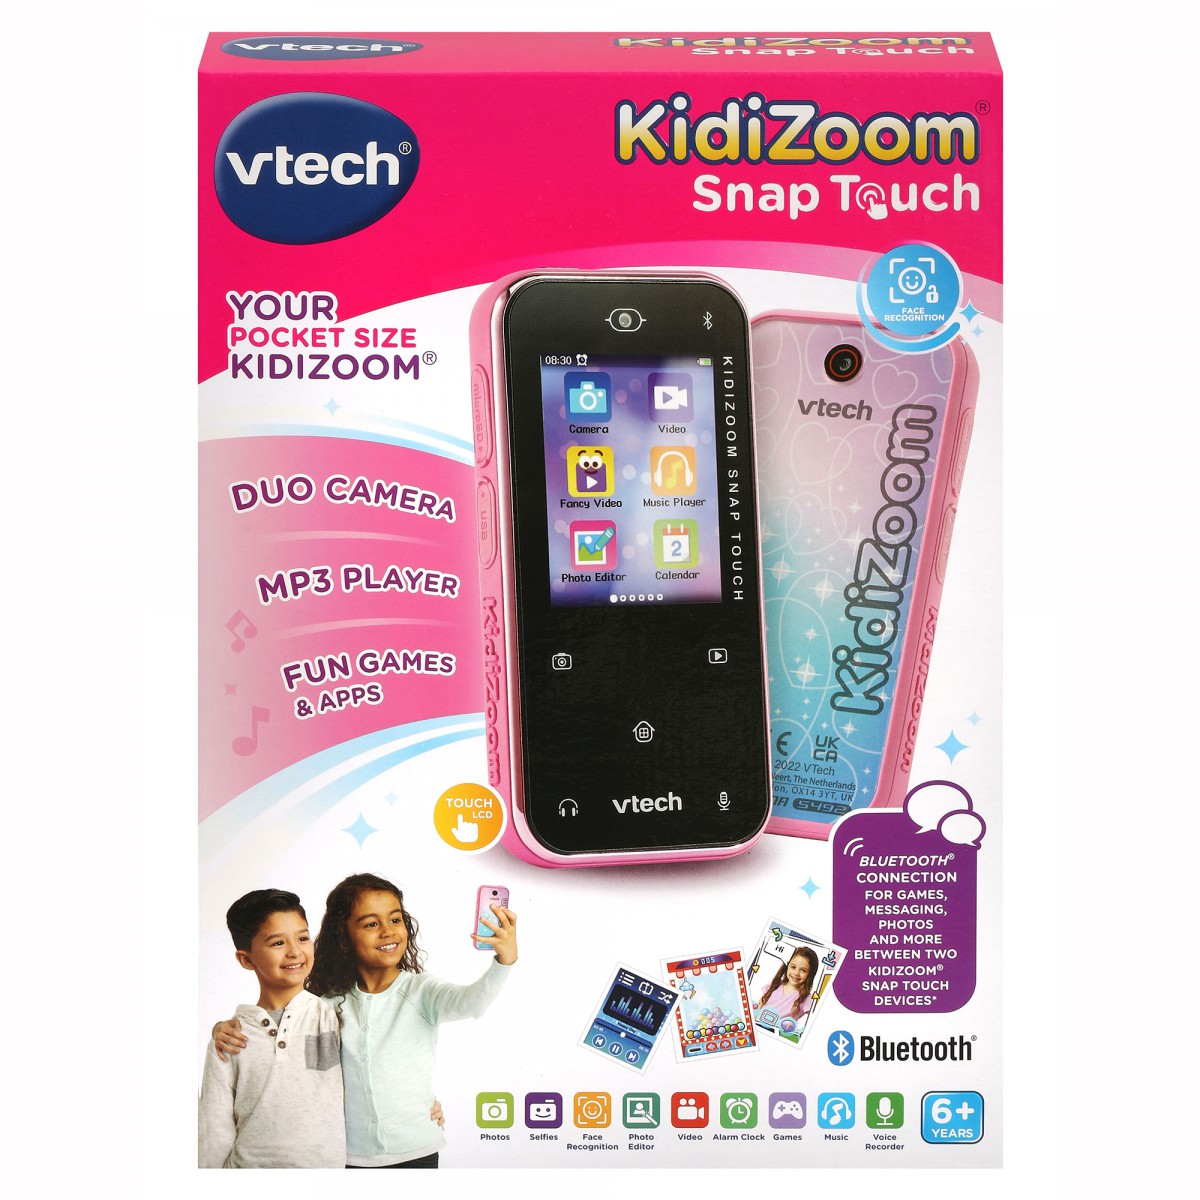 Kidizoom Snap Touch  [NOUVEAU] 🤳 Kidizoom Snap Touch, c'est le